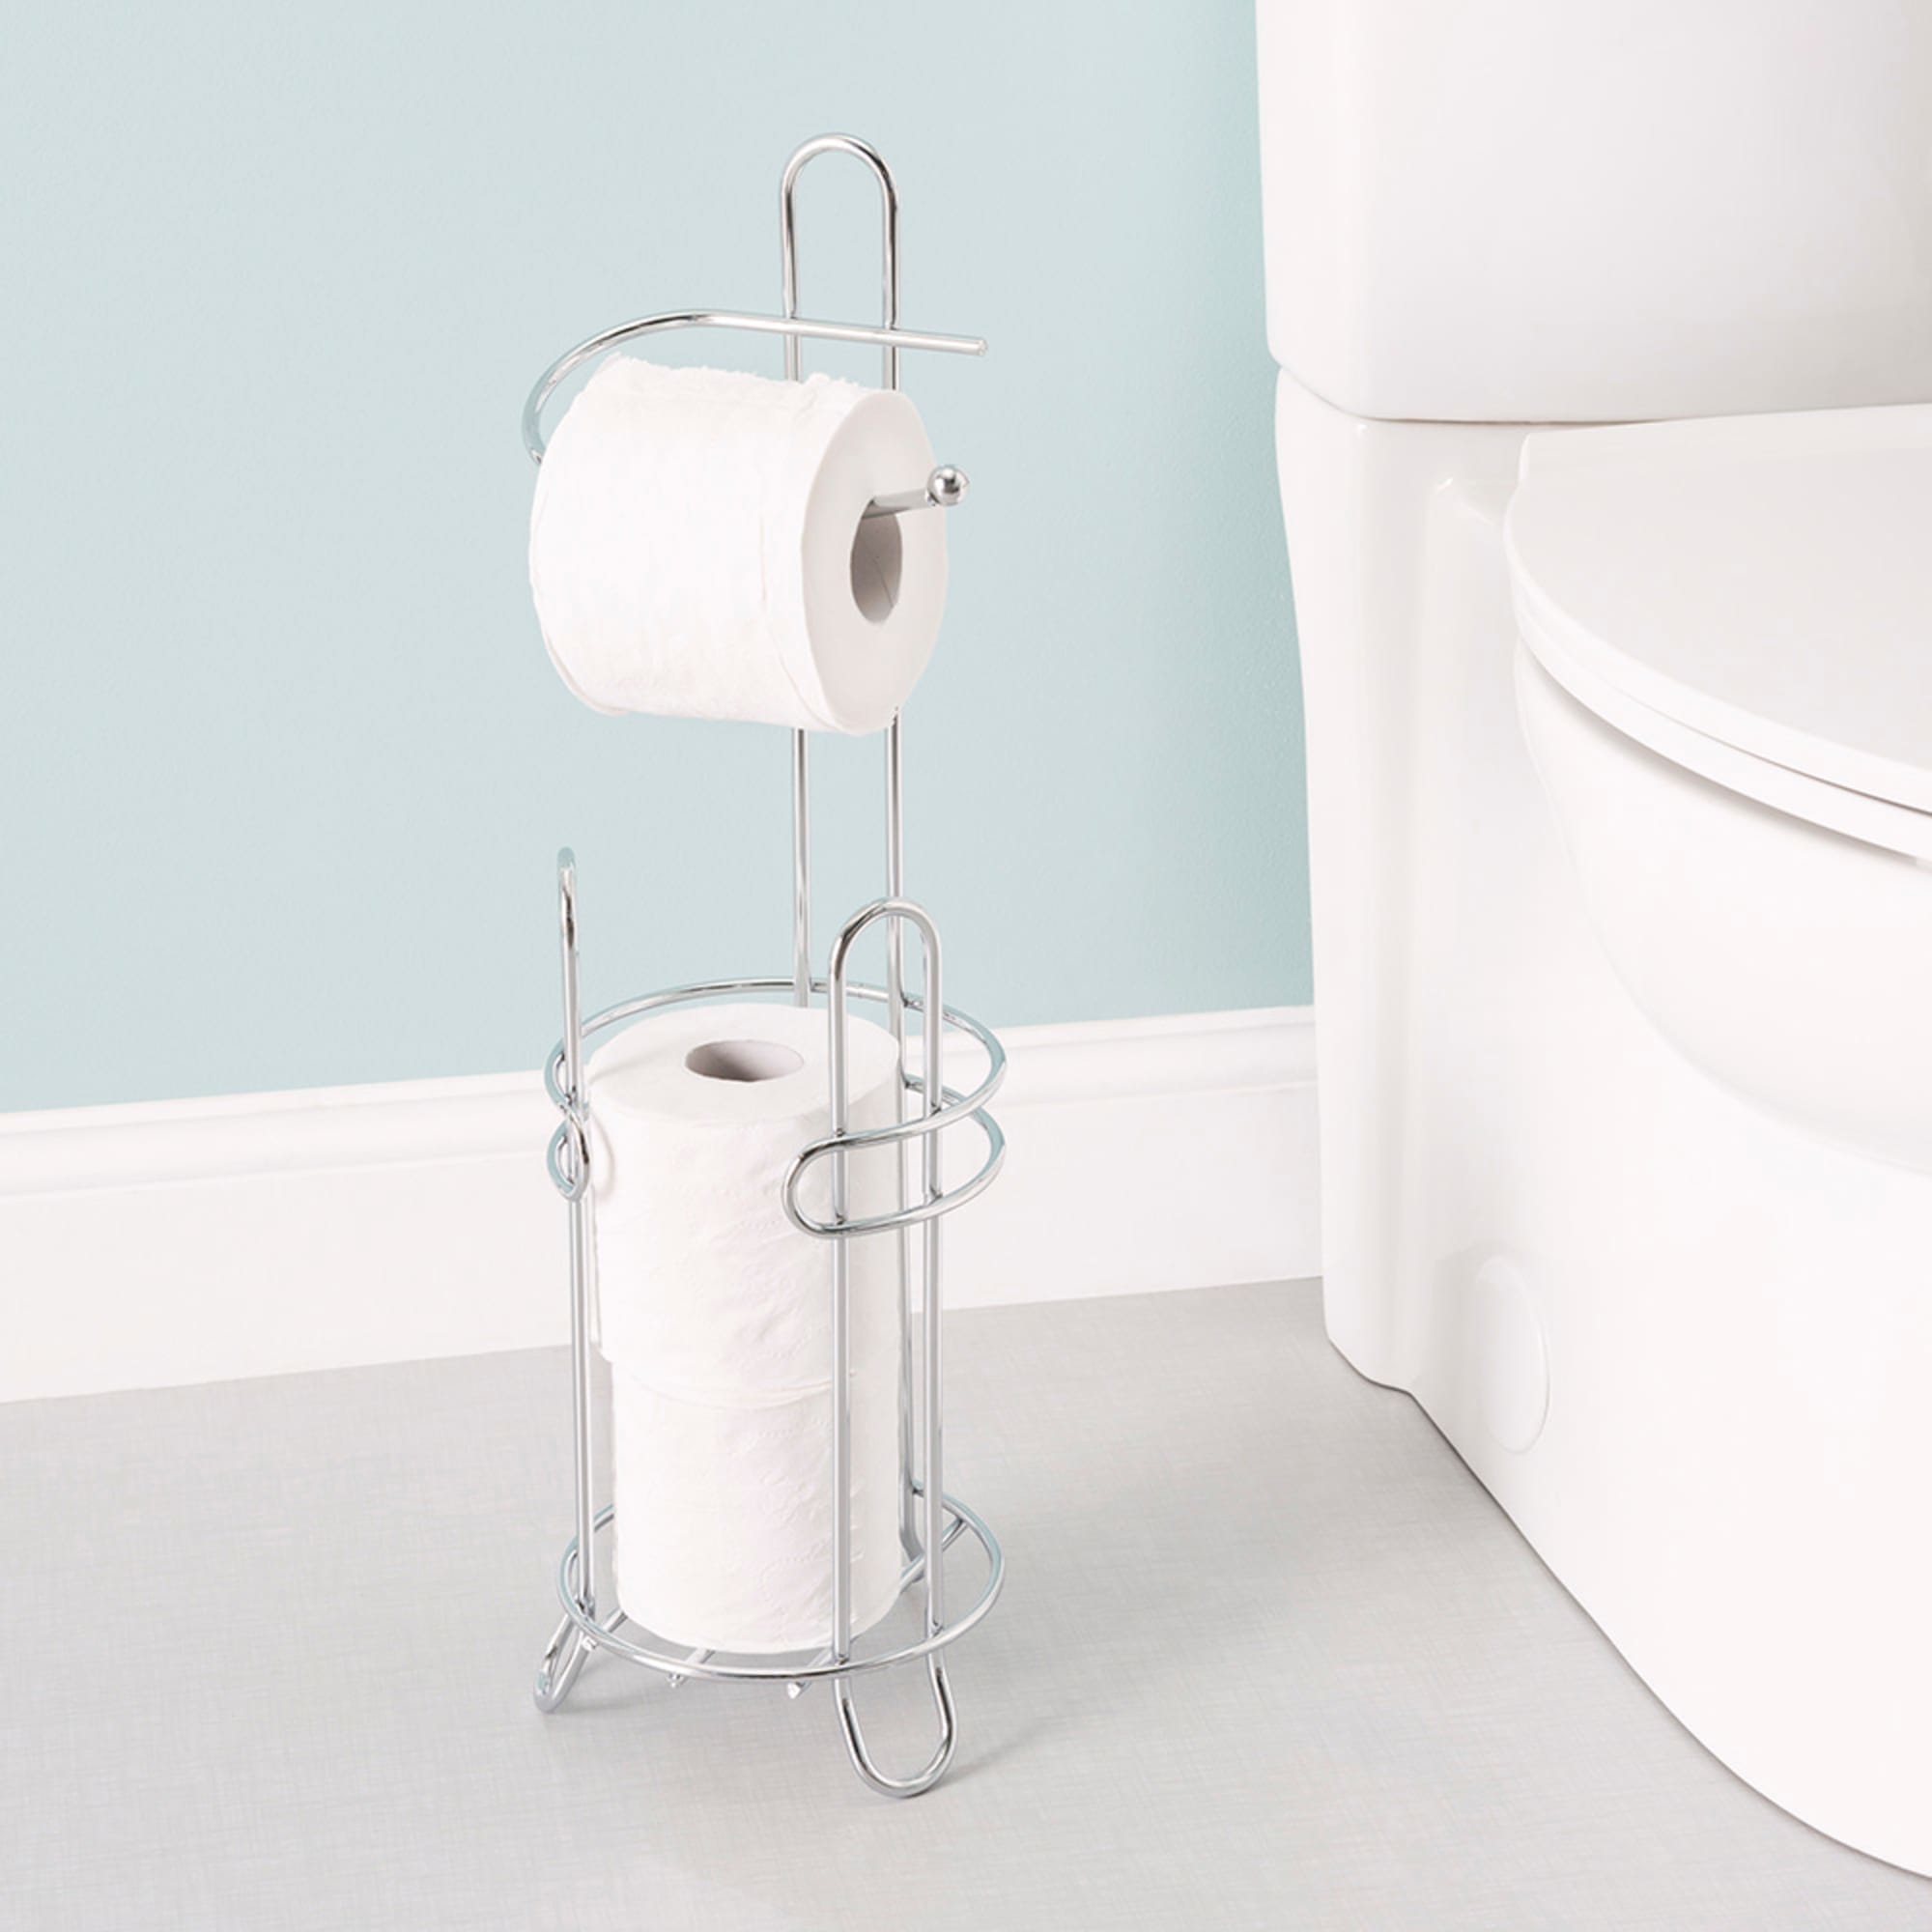 Home Basics Toilet Paper Holder and Dispenser $12.00 EACH, CASE PACK OF 6